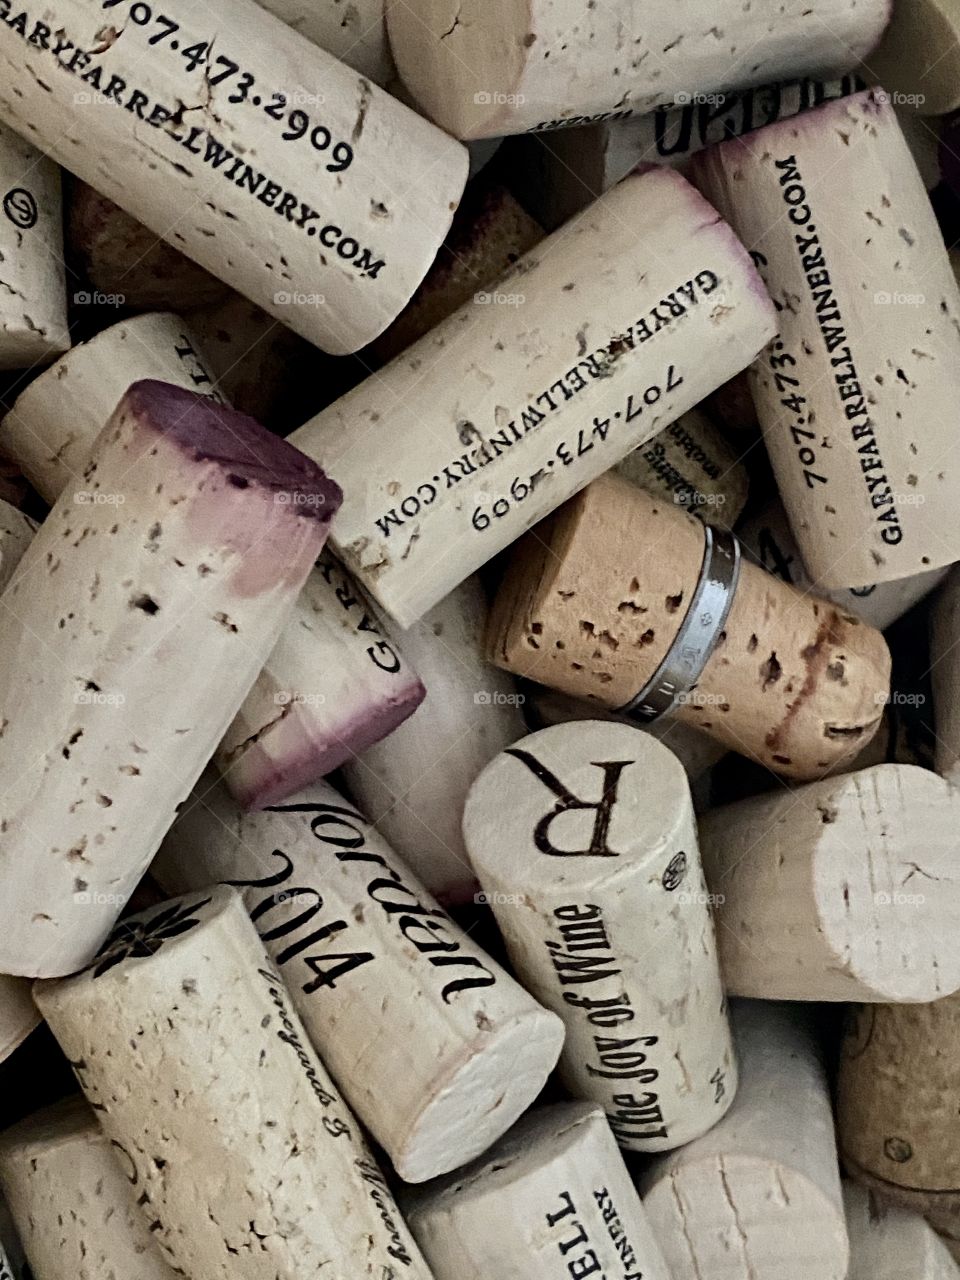 So many corks!